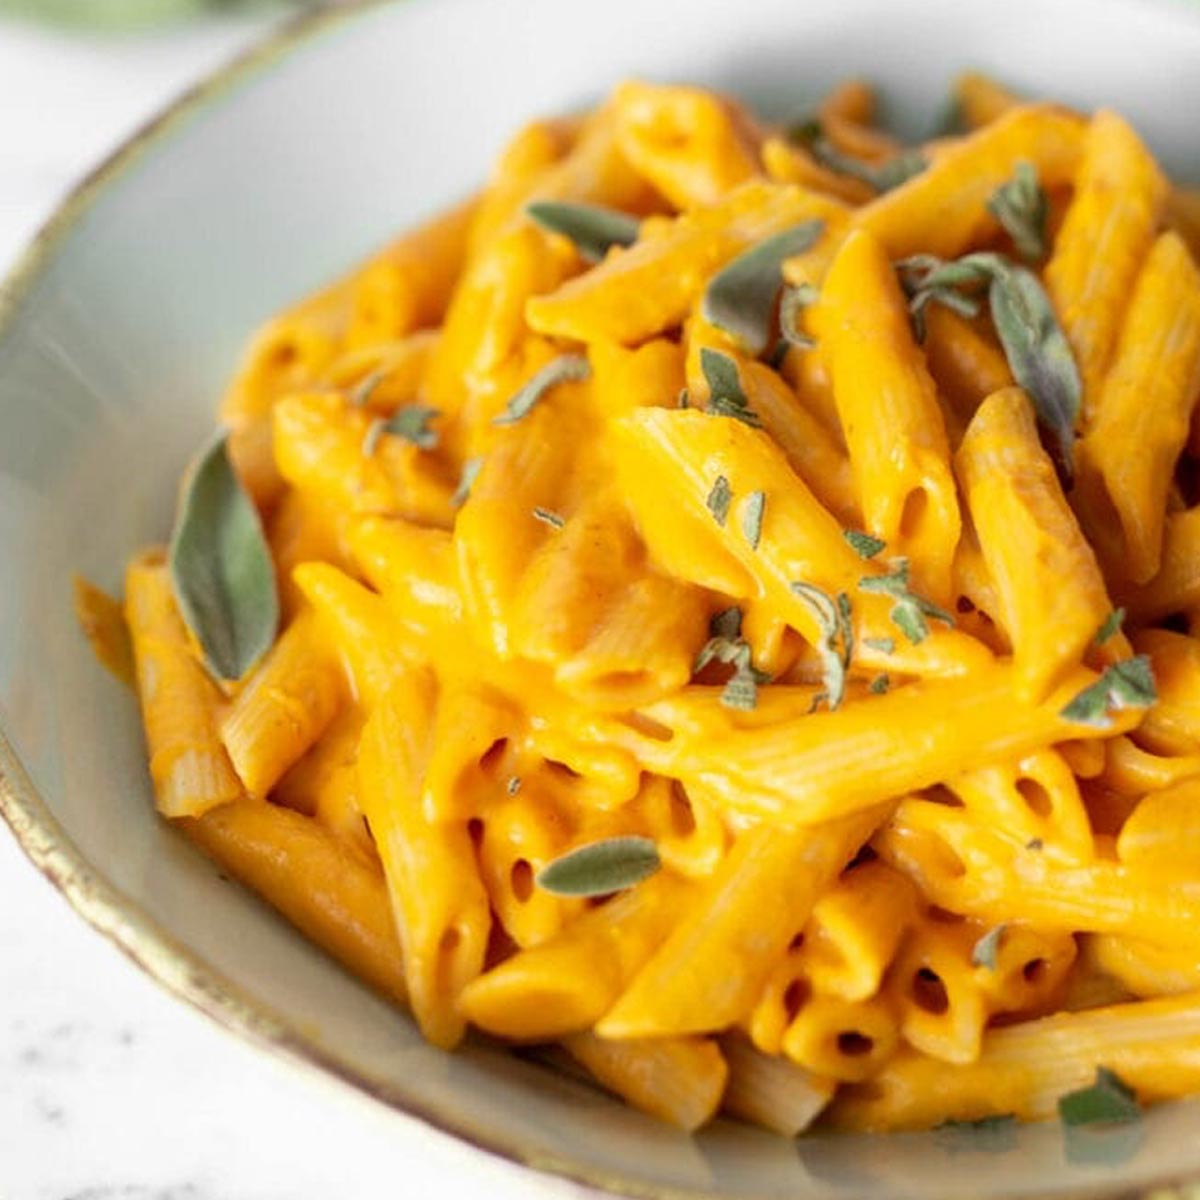 https://runningonrealfood.com/wp-content/uploads/2019/11/creamy-vegan-pumpkin-pasta.jpg